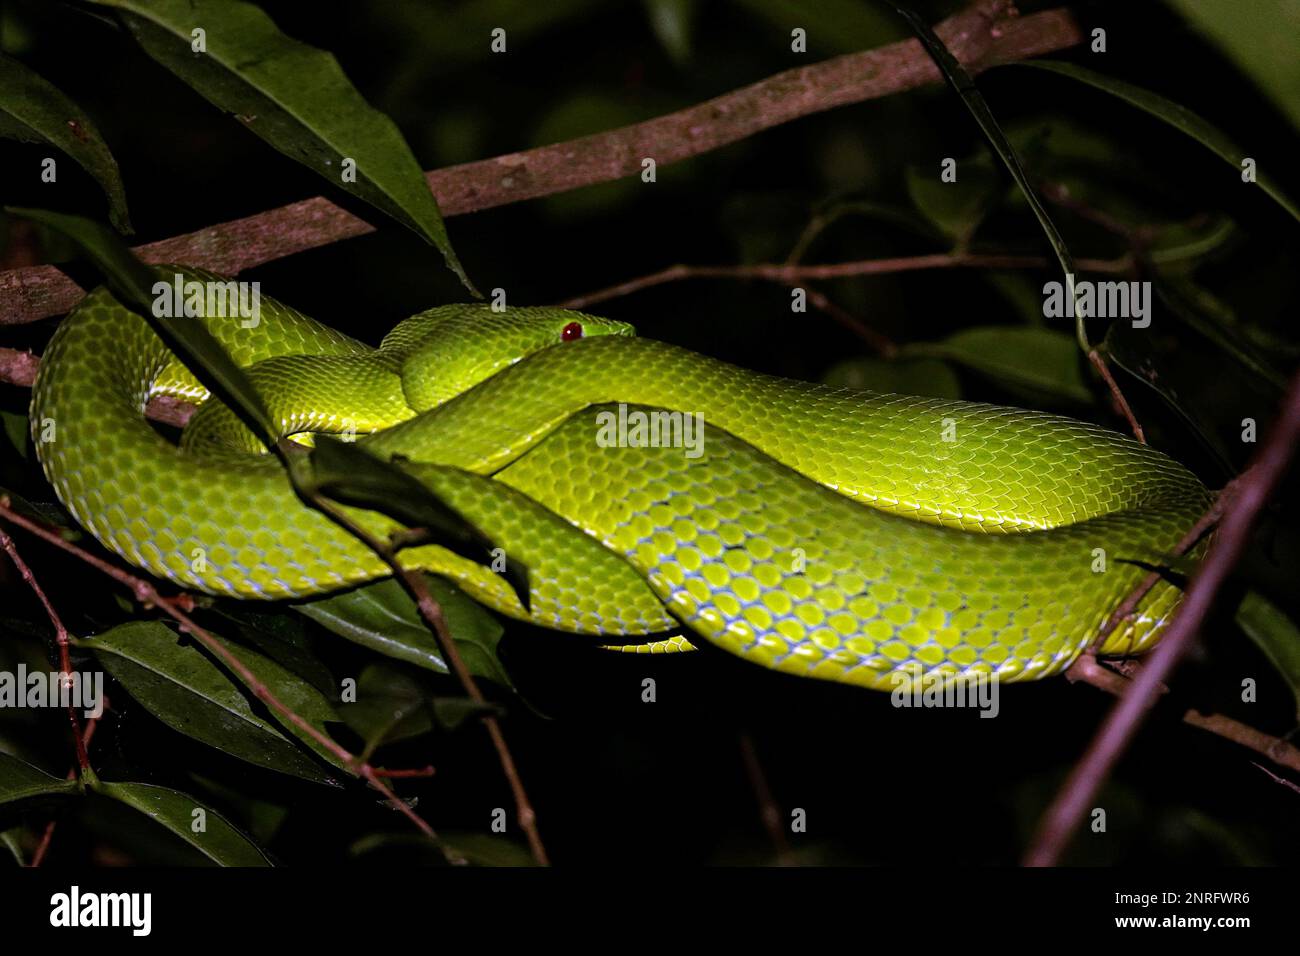 Una imagen de dos serpientes verdes enrolladas alrededor de las ramas de un árbol en un entorno nocturno Foto de stock